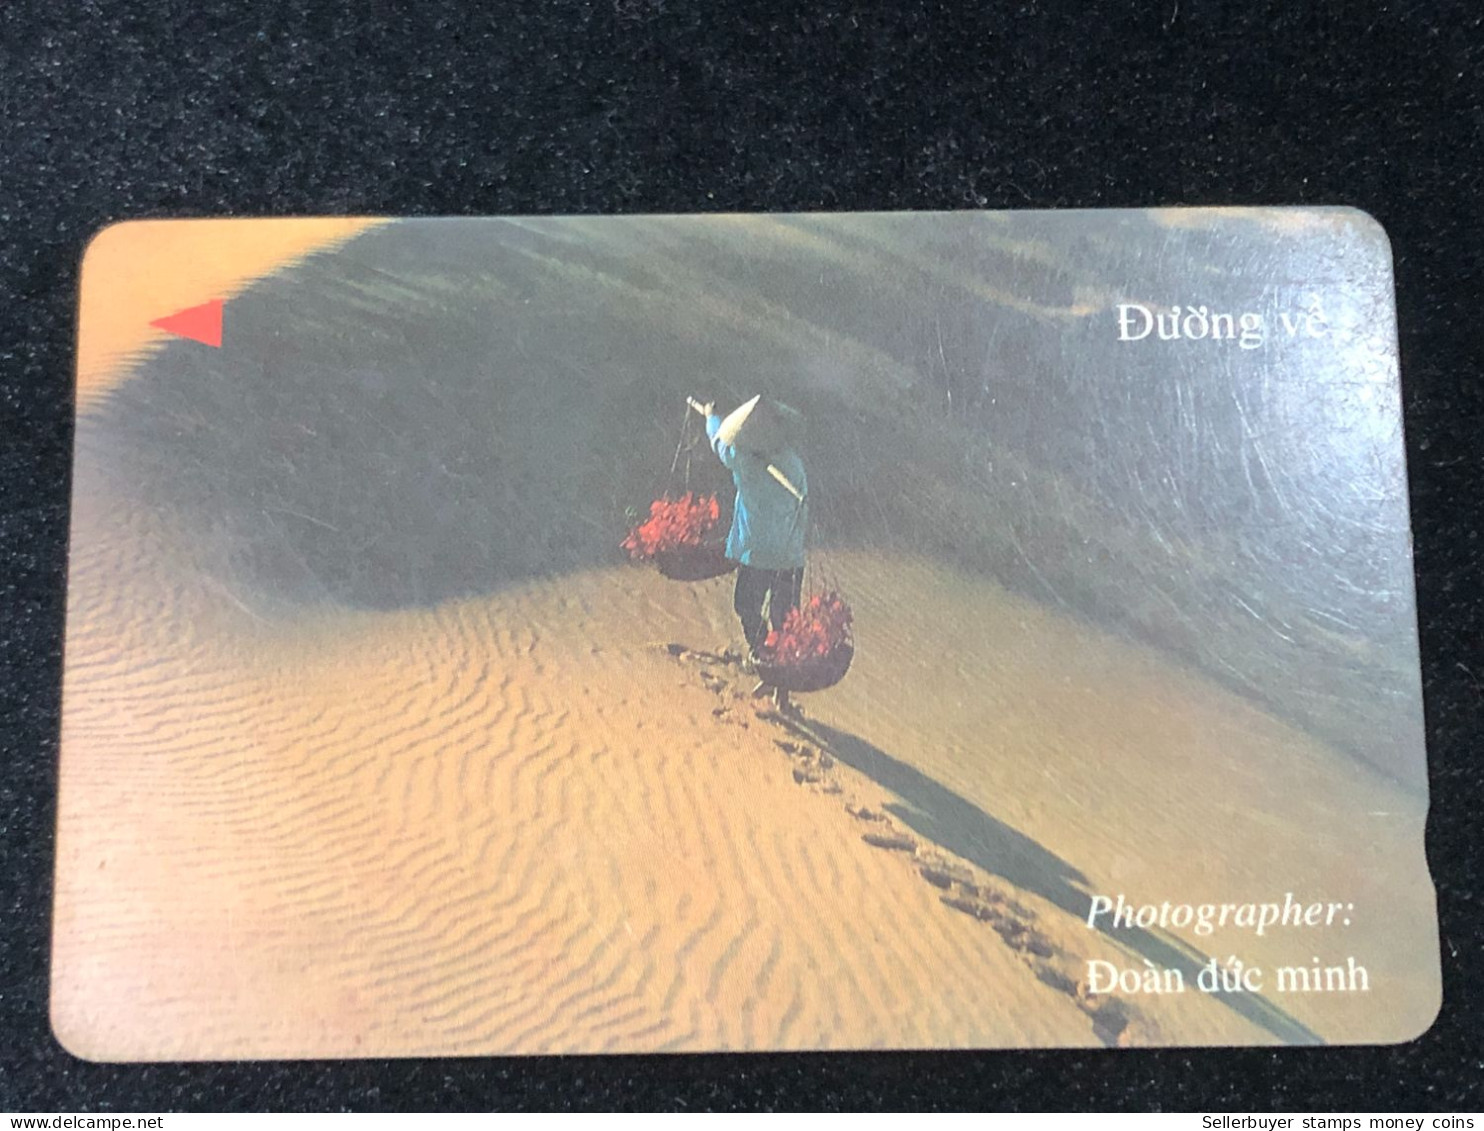 Card Phonekad Vietnam(the Way Home- 60 000dong-1997)-1pcs - Viêt-Nam